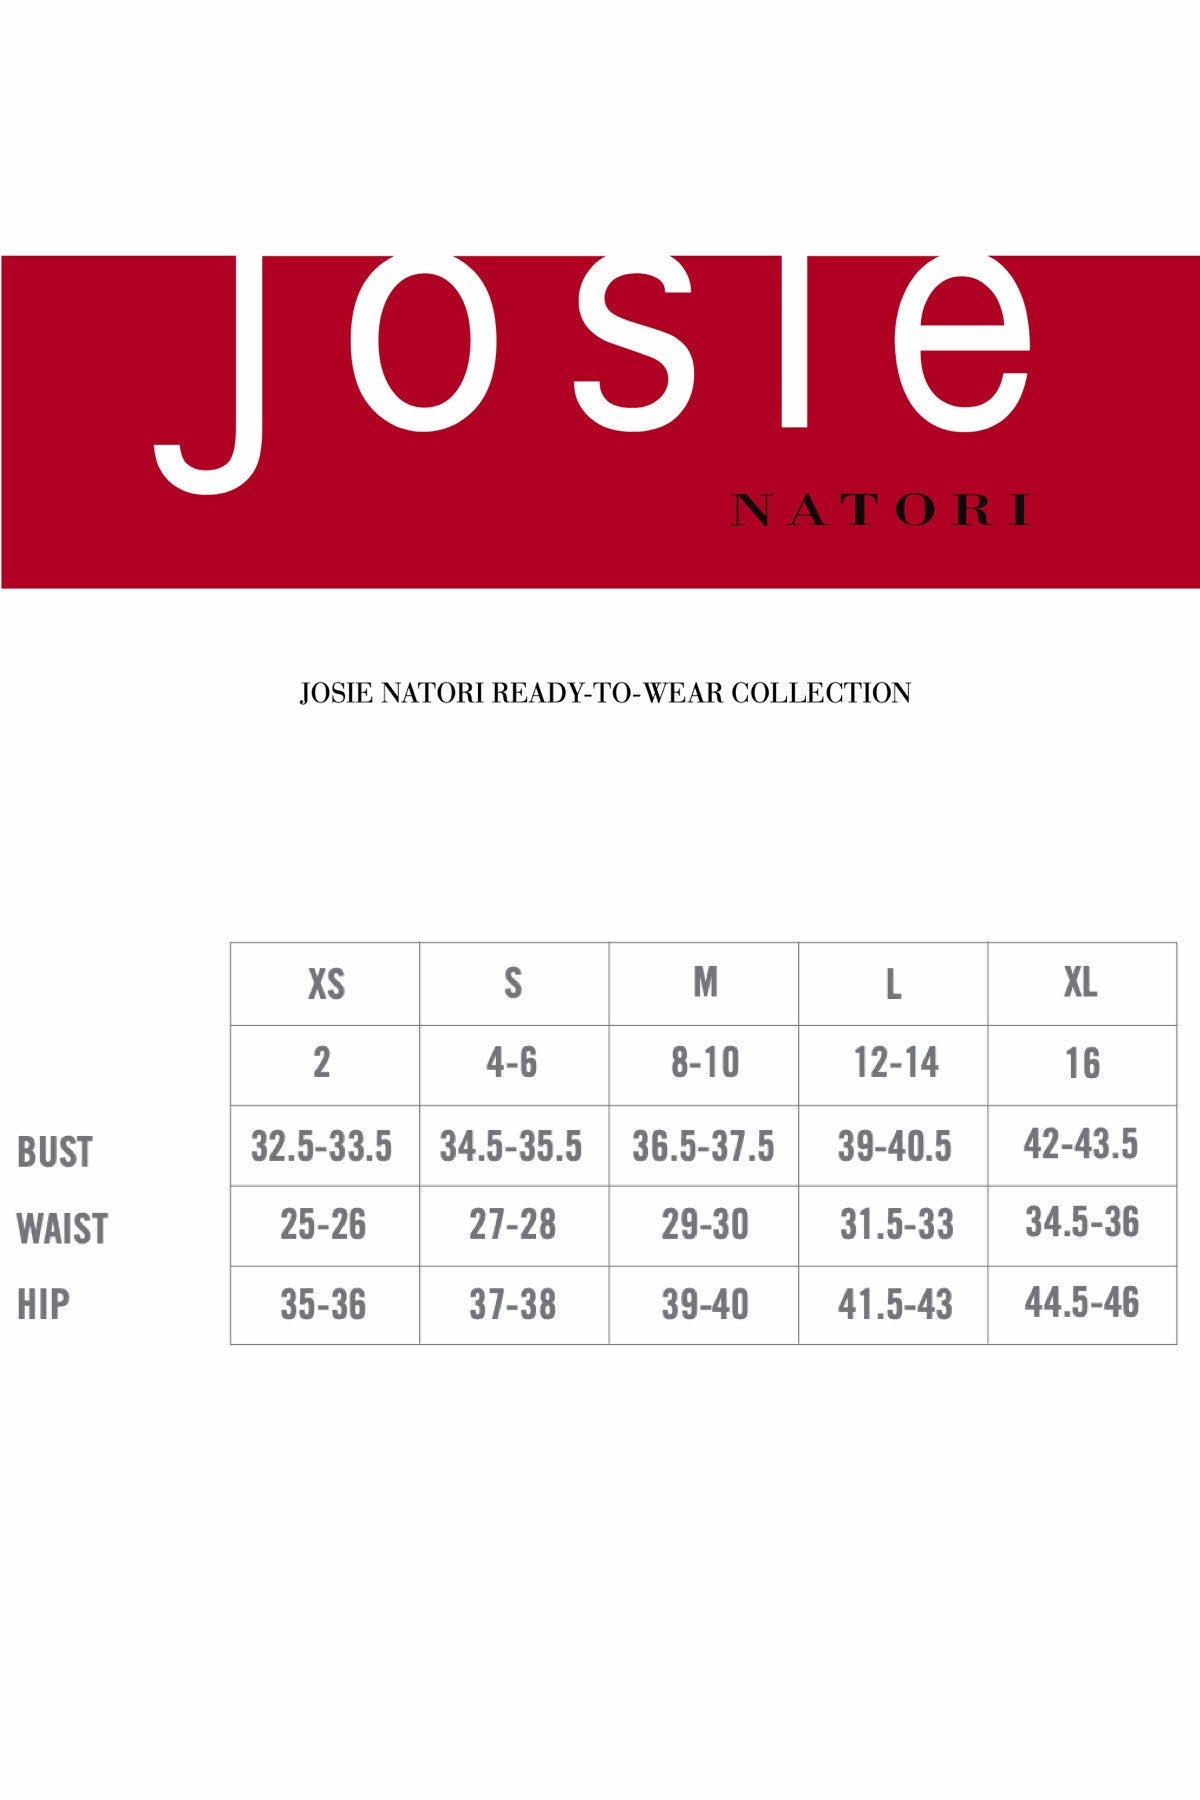 Josie by Natori Light-Pink Lounge Tee Tank